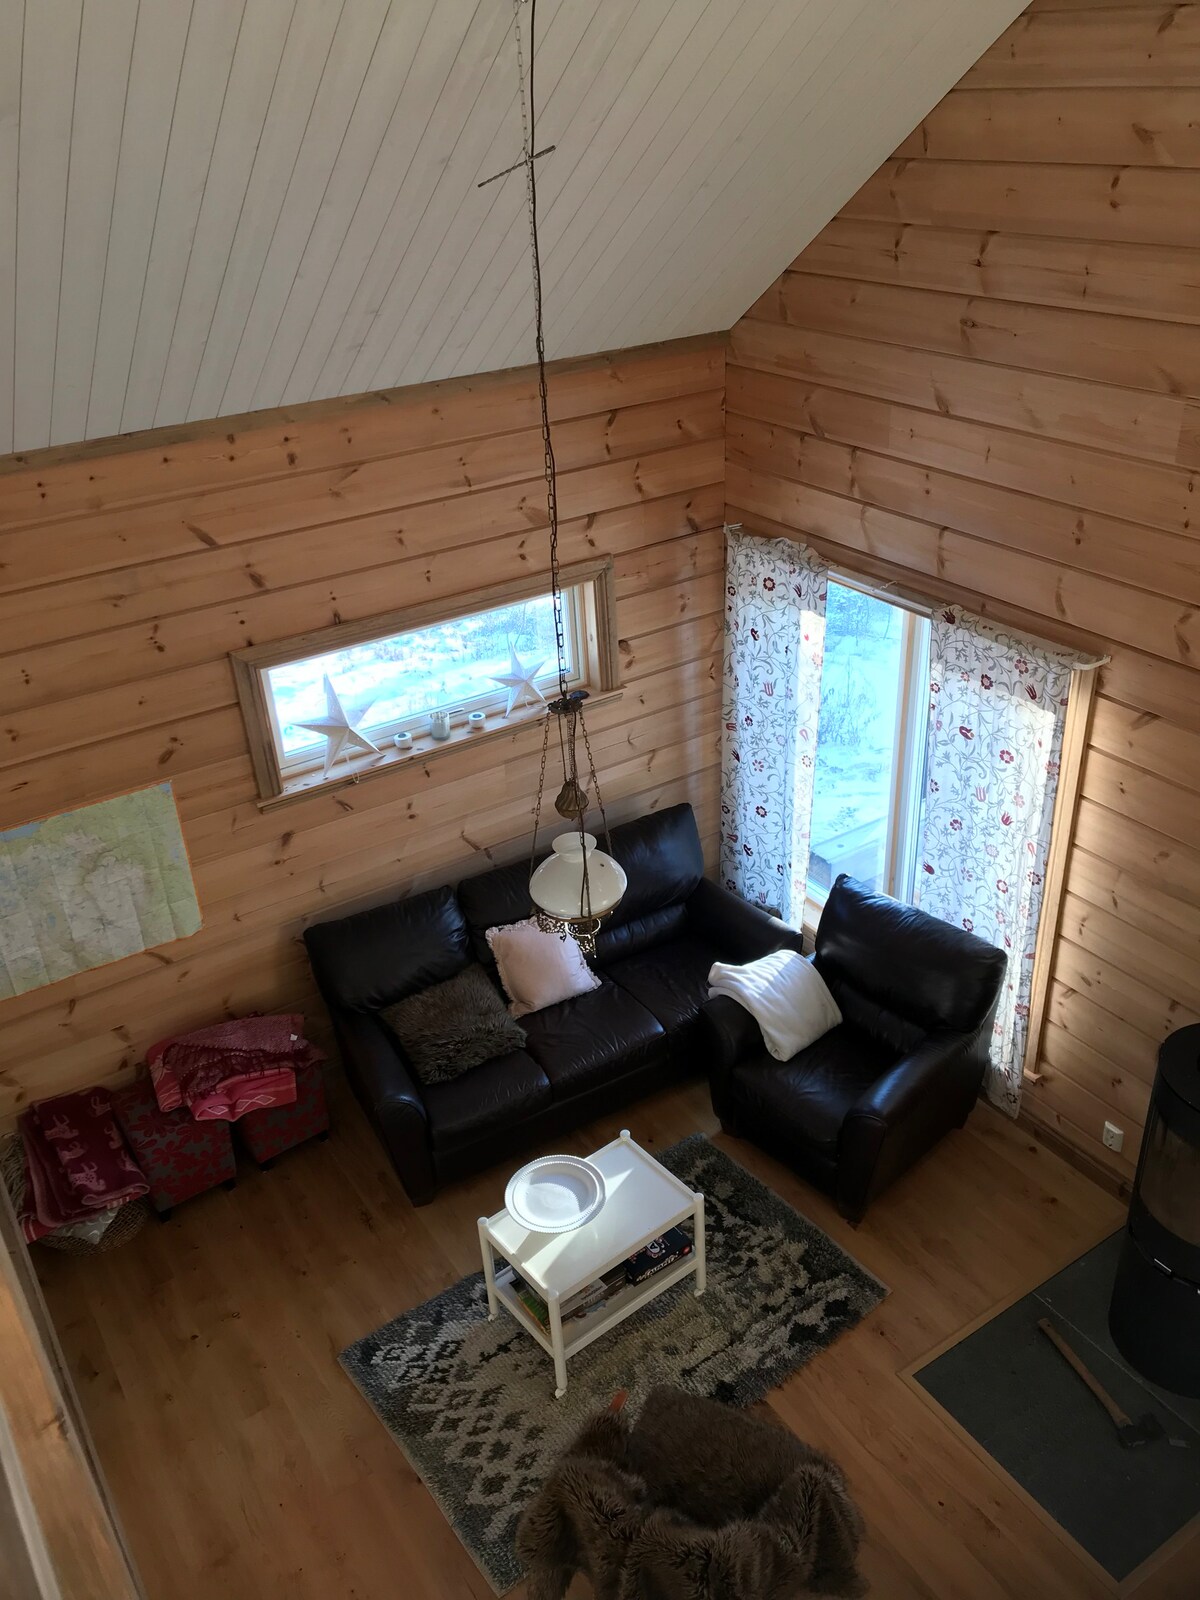 Jämtland山脉的舒适乡村小屋